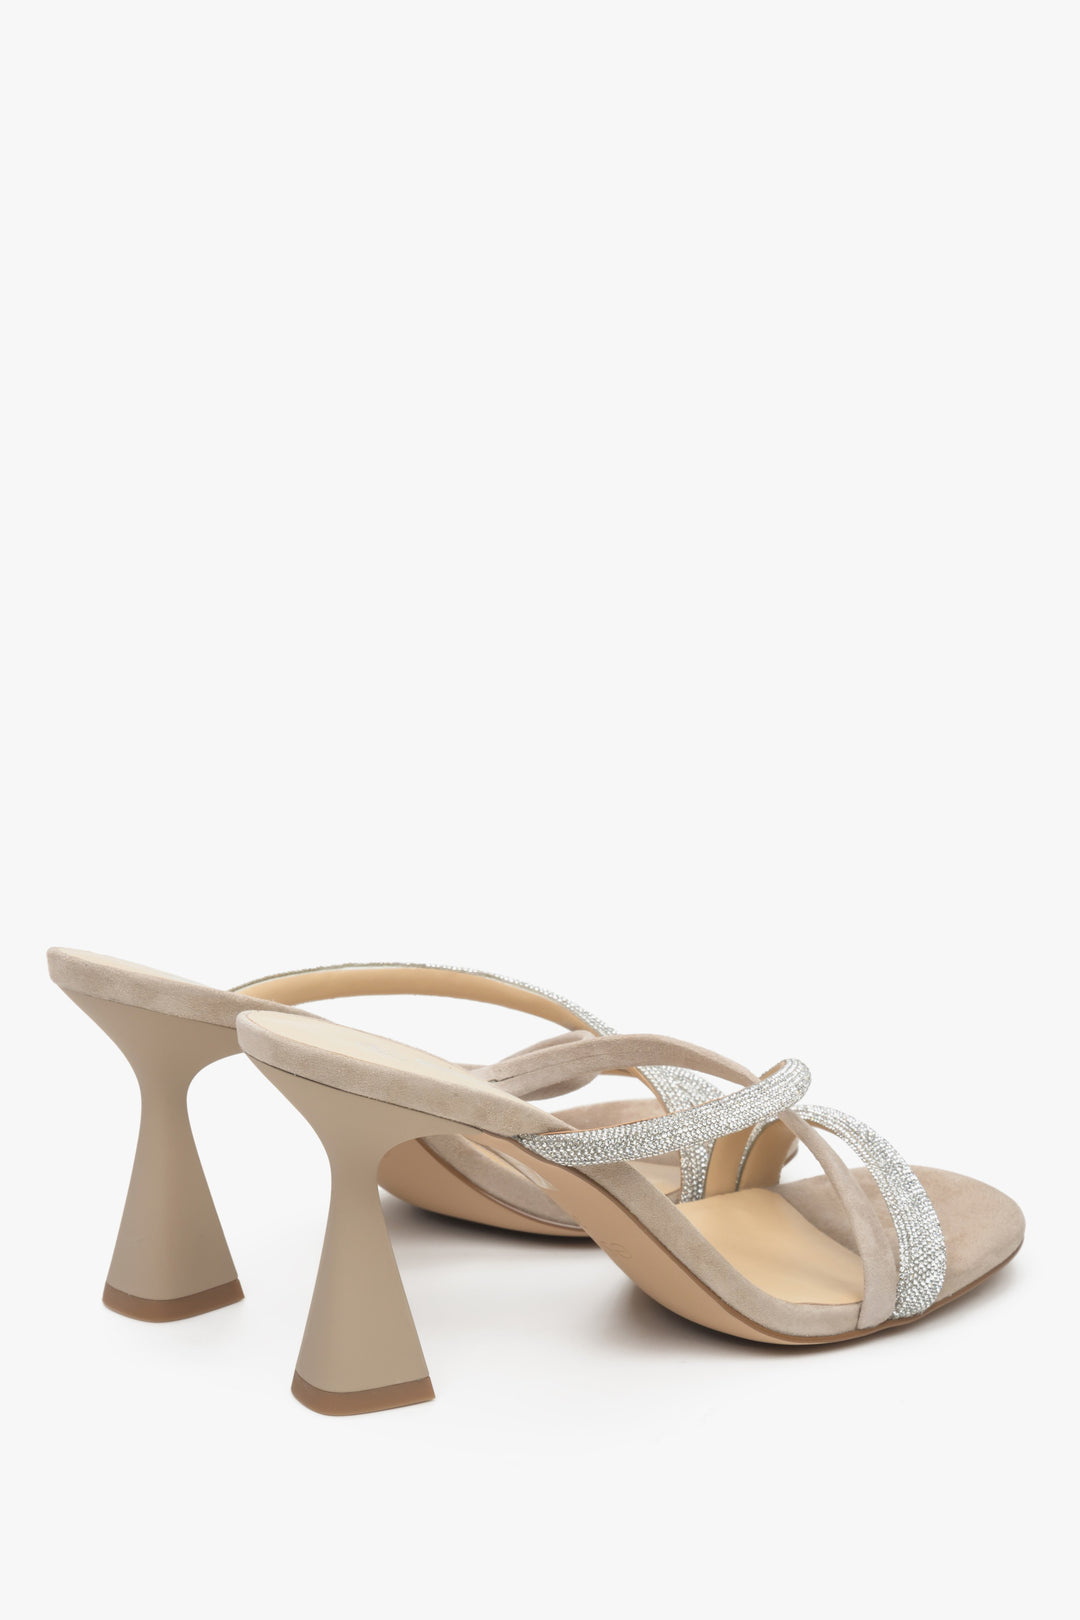 Women's beige velour heeled sandals with zirconia, Estro brand.